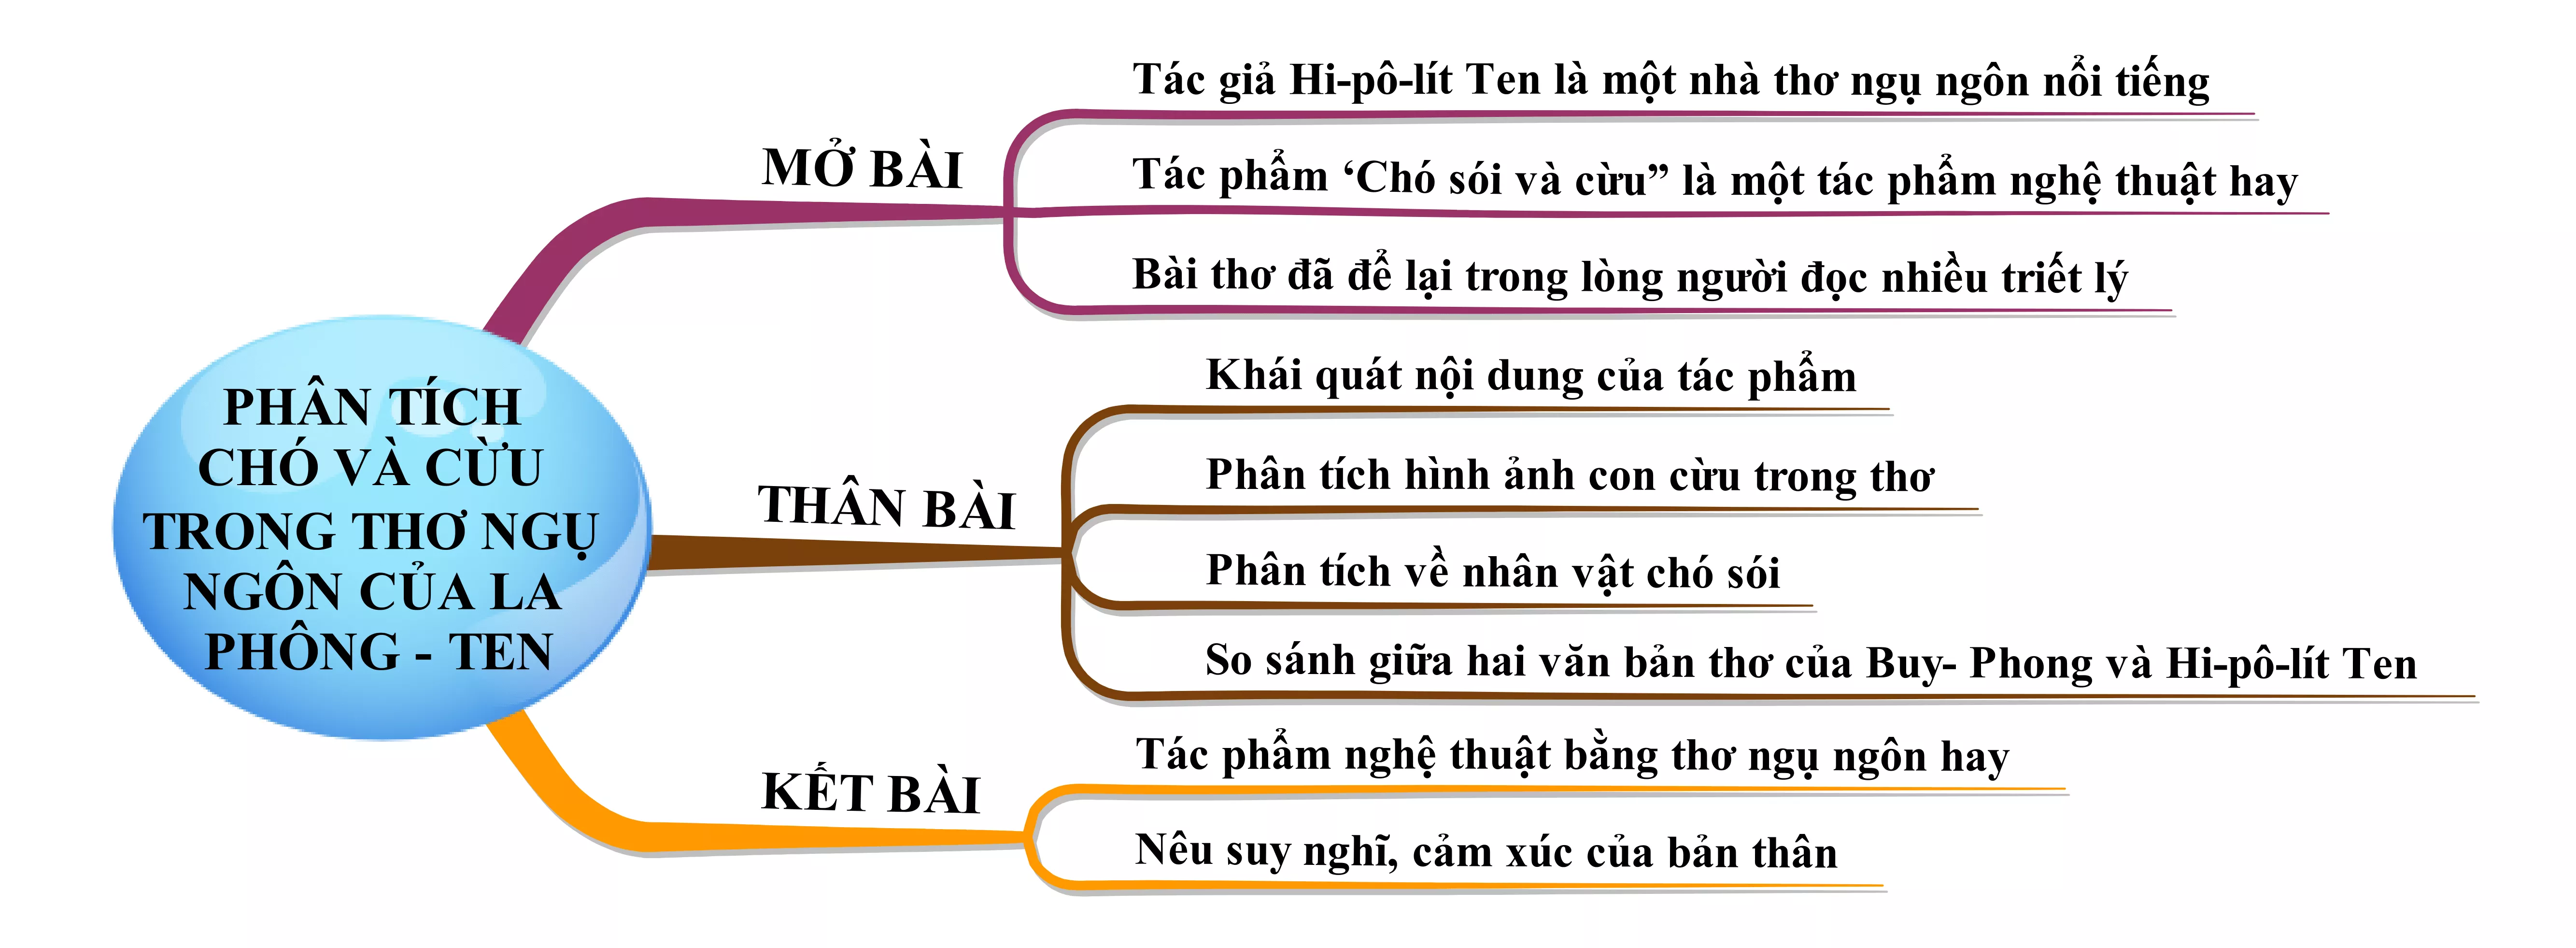 Phân tích Chó sói và cừu trong thơ ngụ ngôn của La Phông-ten năm 2021 Phan Tich Cho Soi Va Cuu Trong Tho Ngu Ngon Cua La Phong Ten Nam 2021 18361